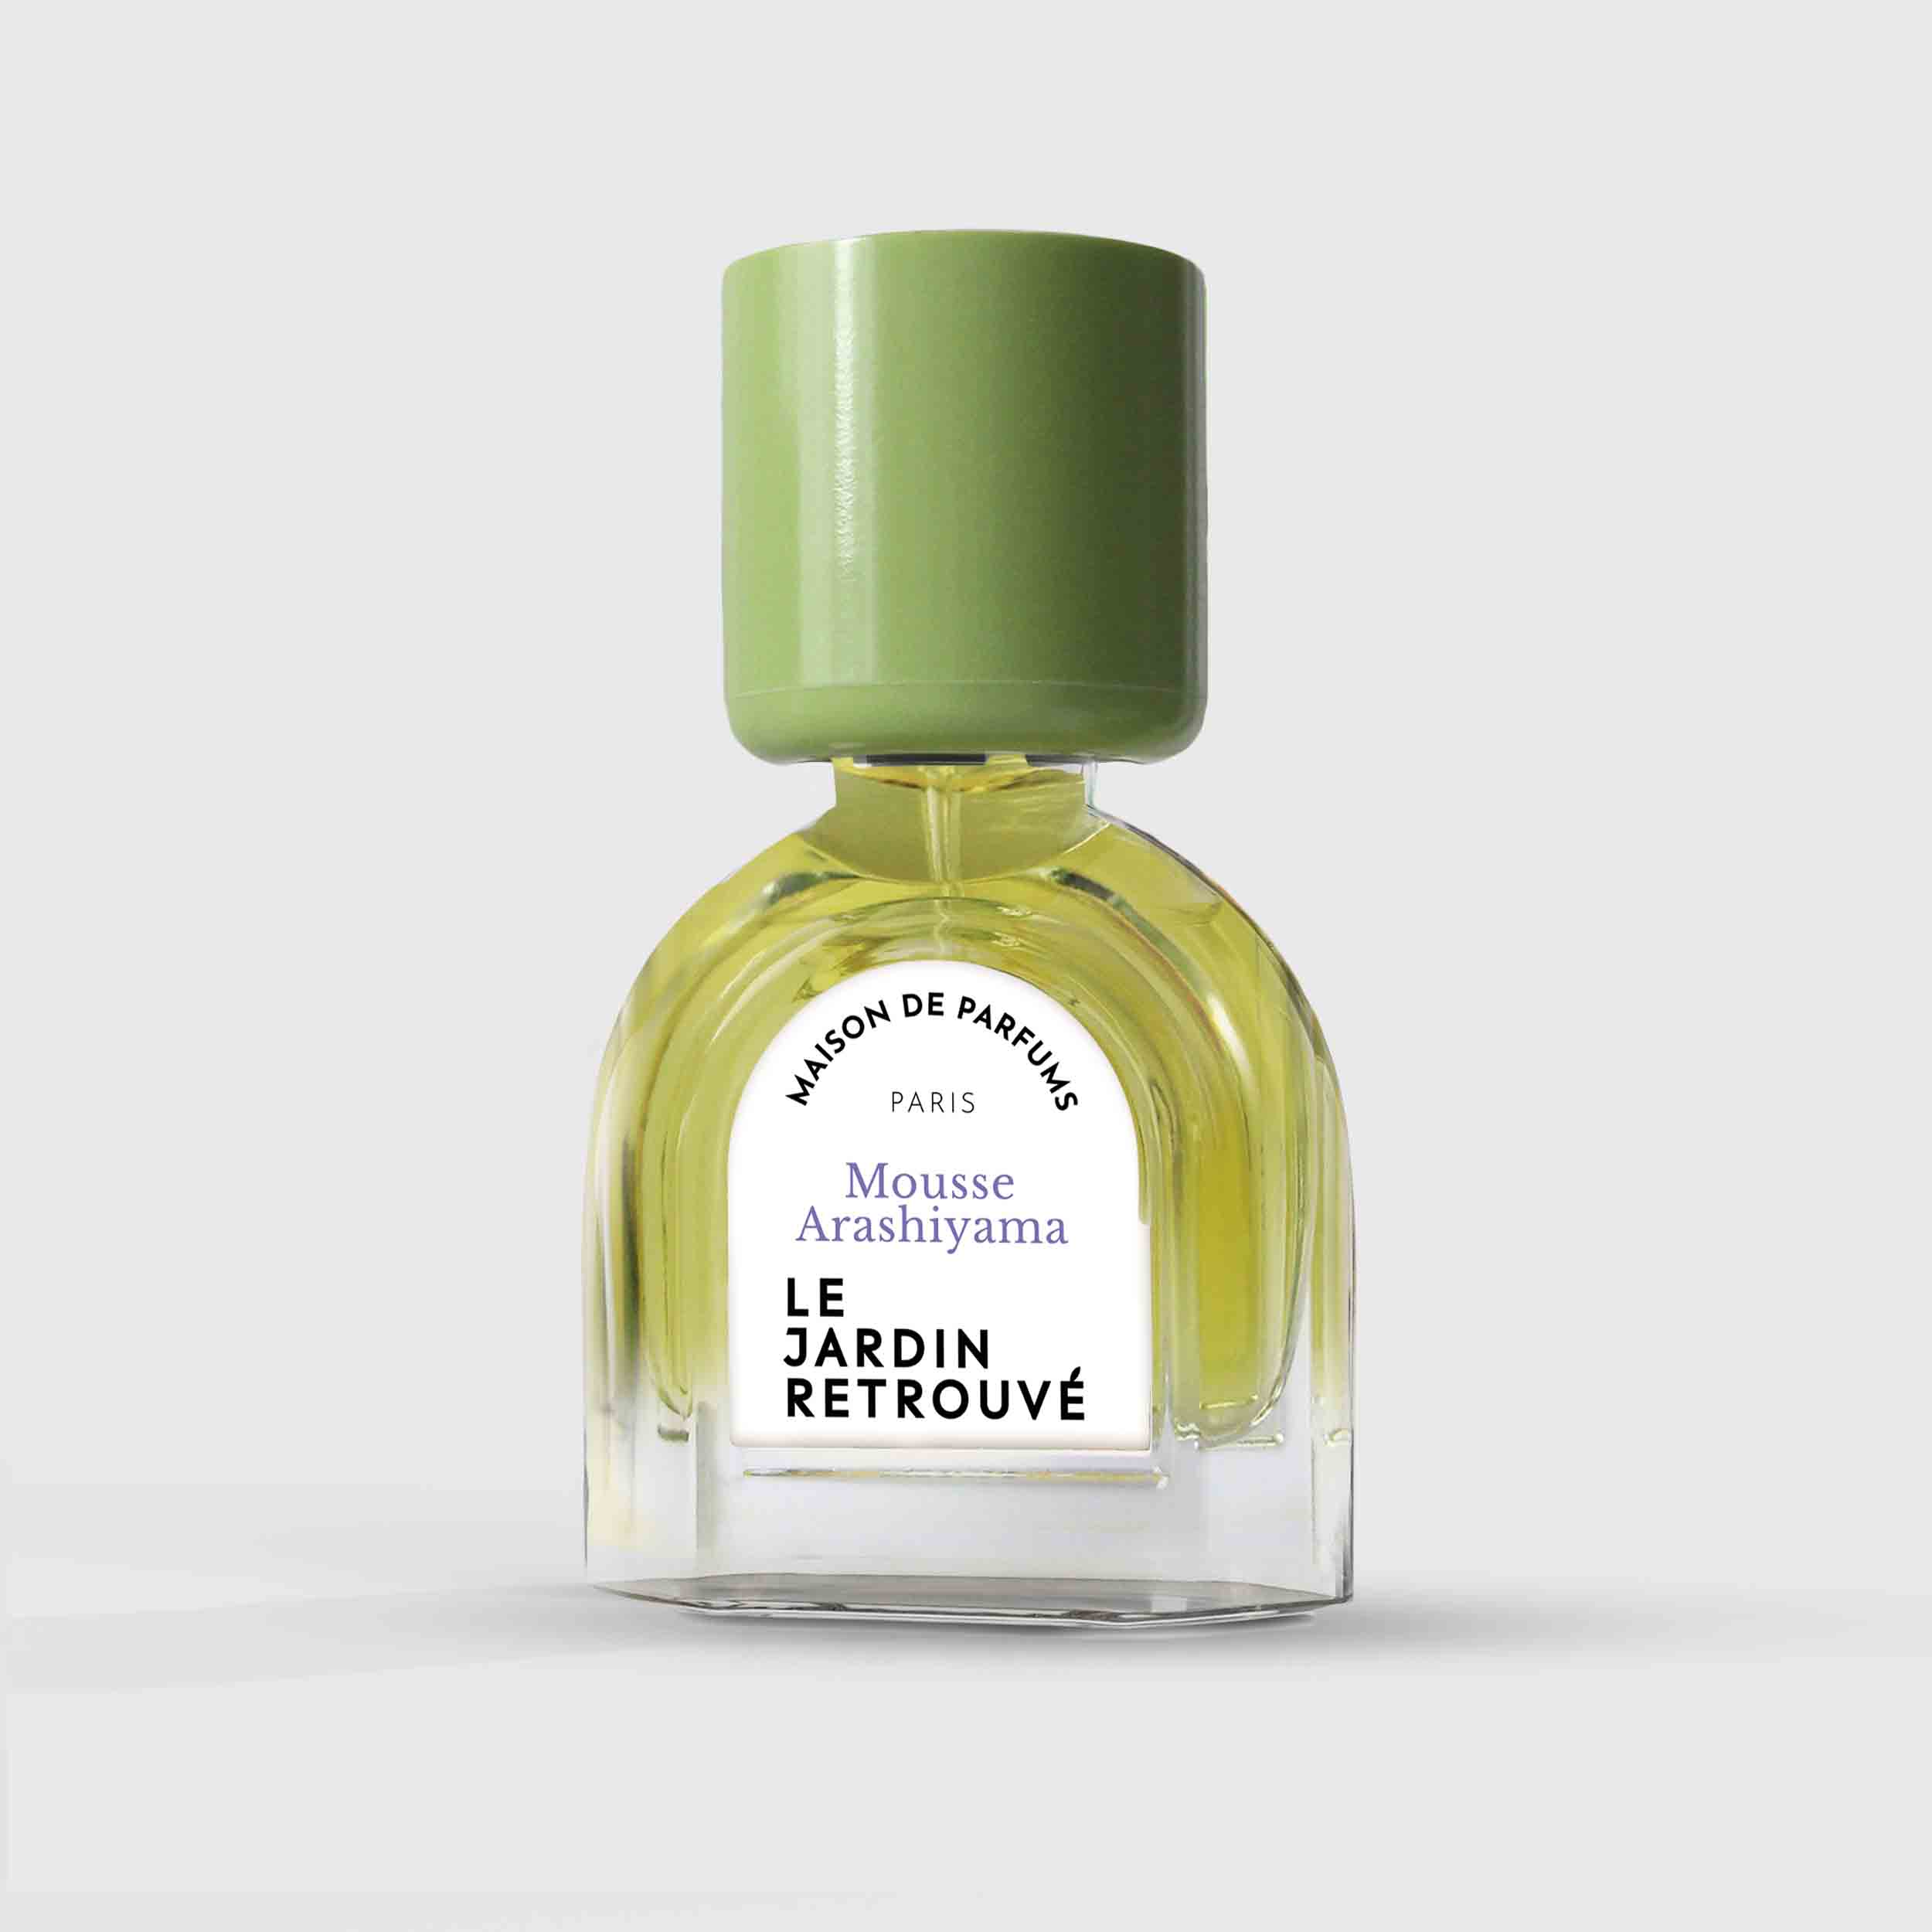 Mousse Arashiyama Eau de Parfum 15ml Bottle by Le Jardin Retrouvé